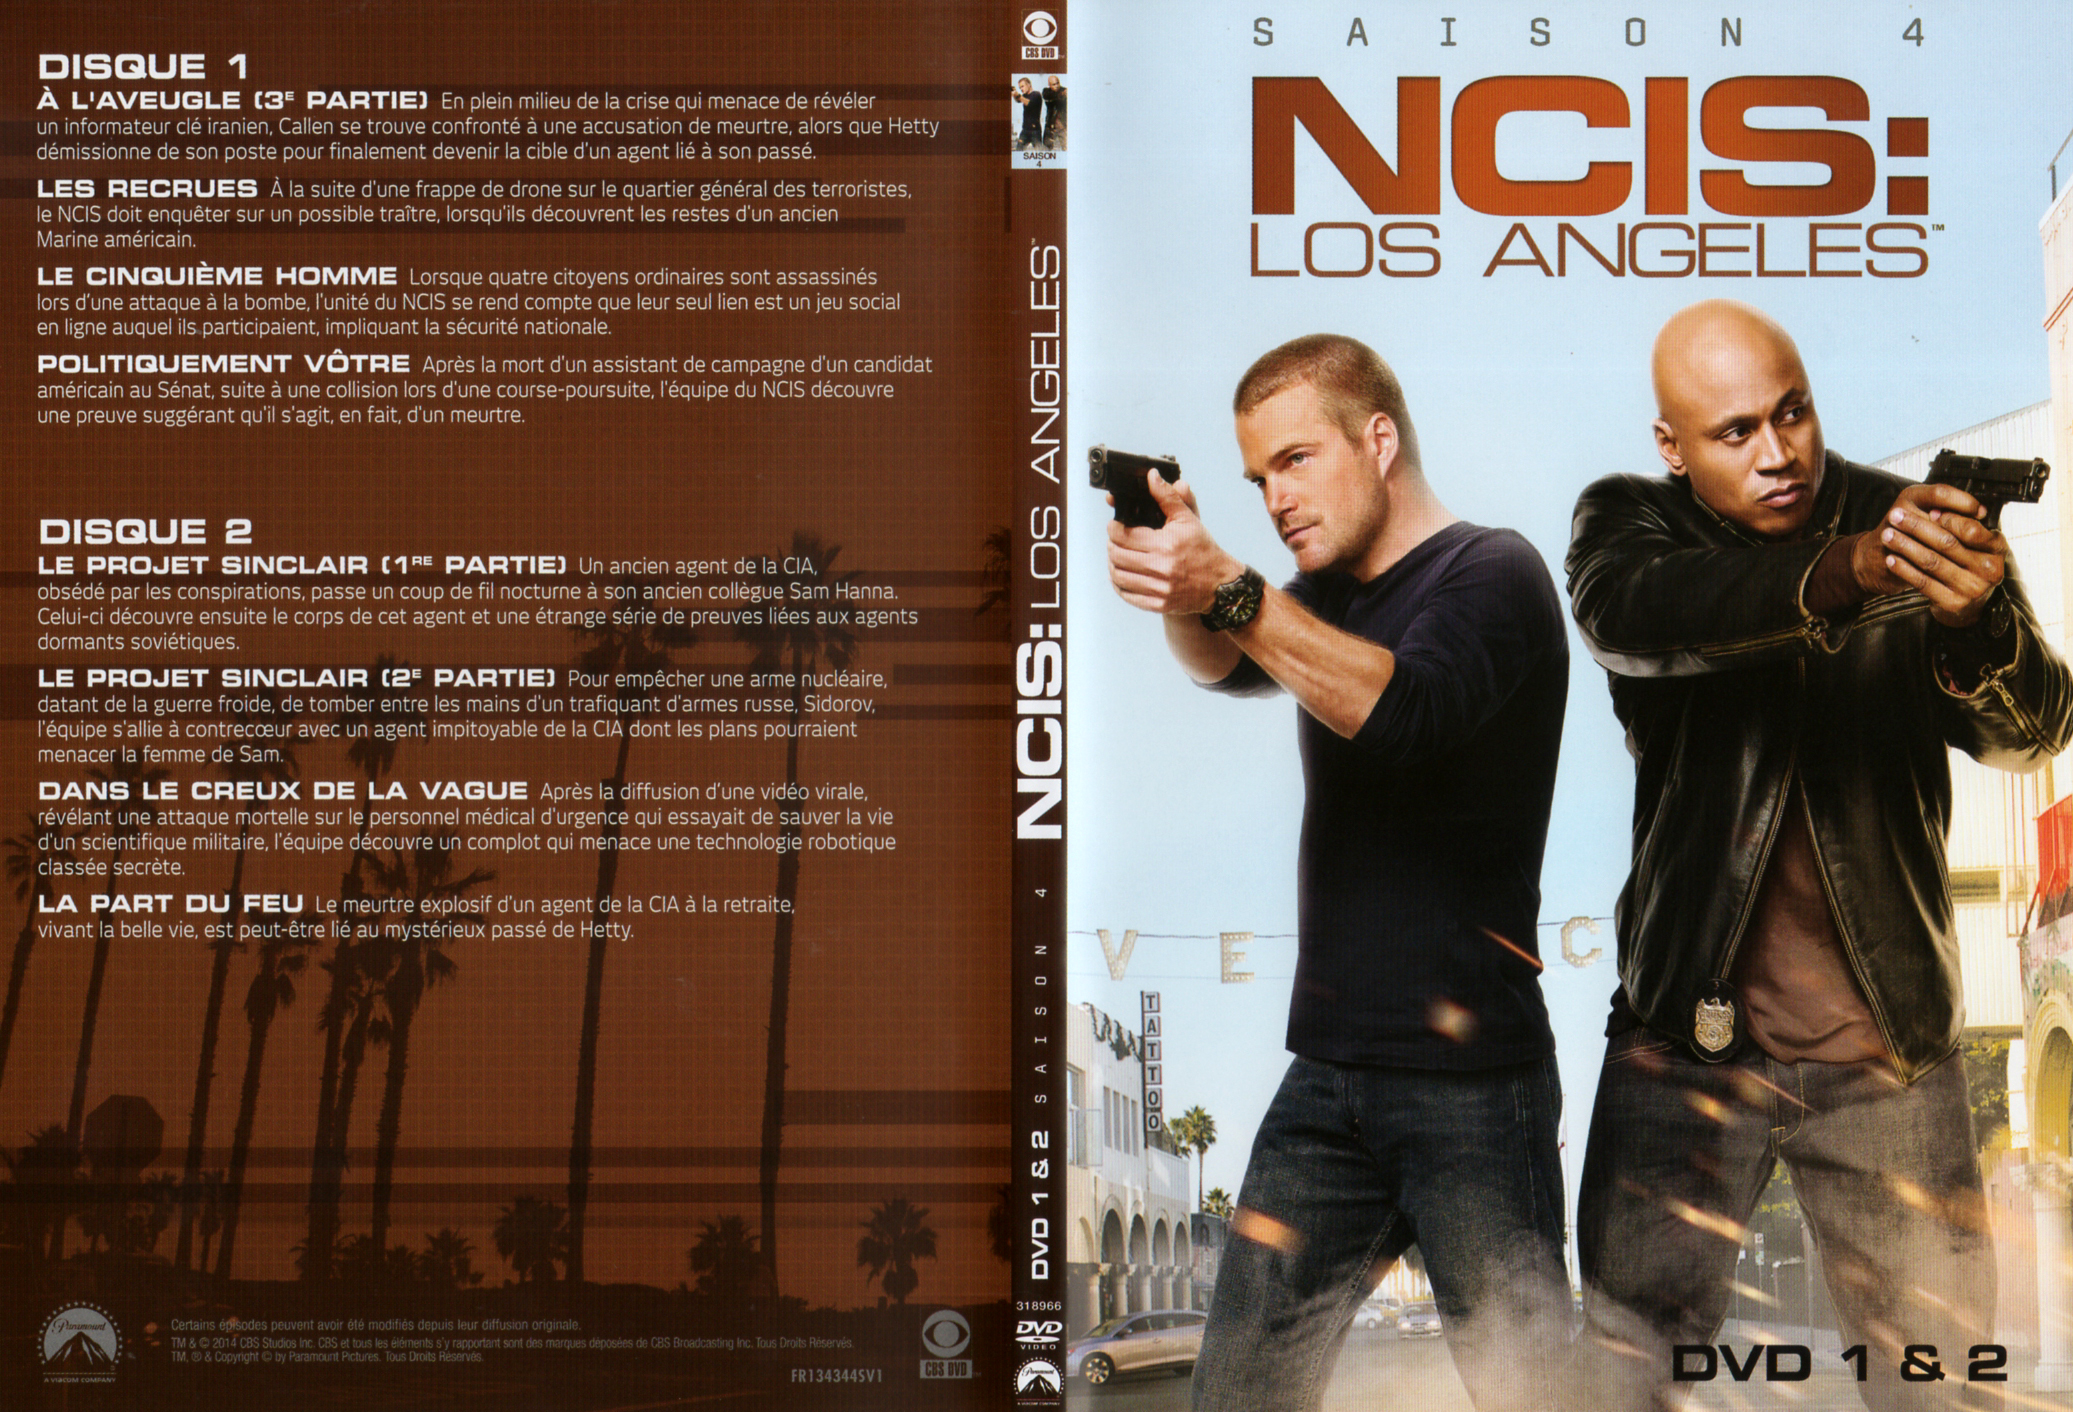 Jaquette DVD NCIS Los Angeles Saison 4 DVD 1